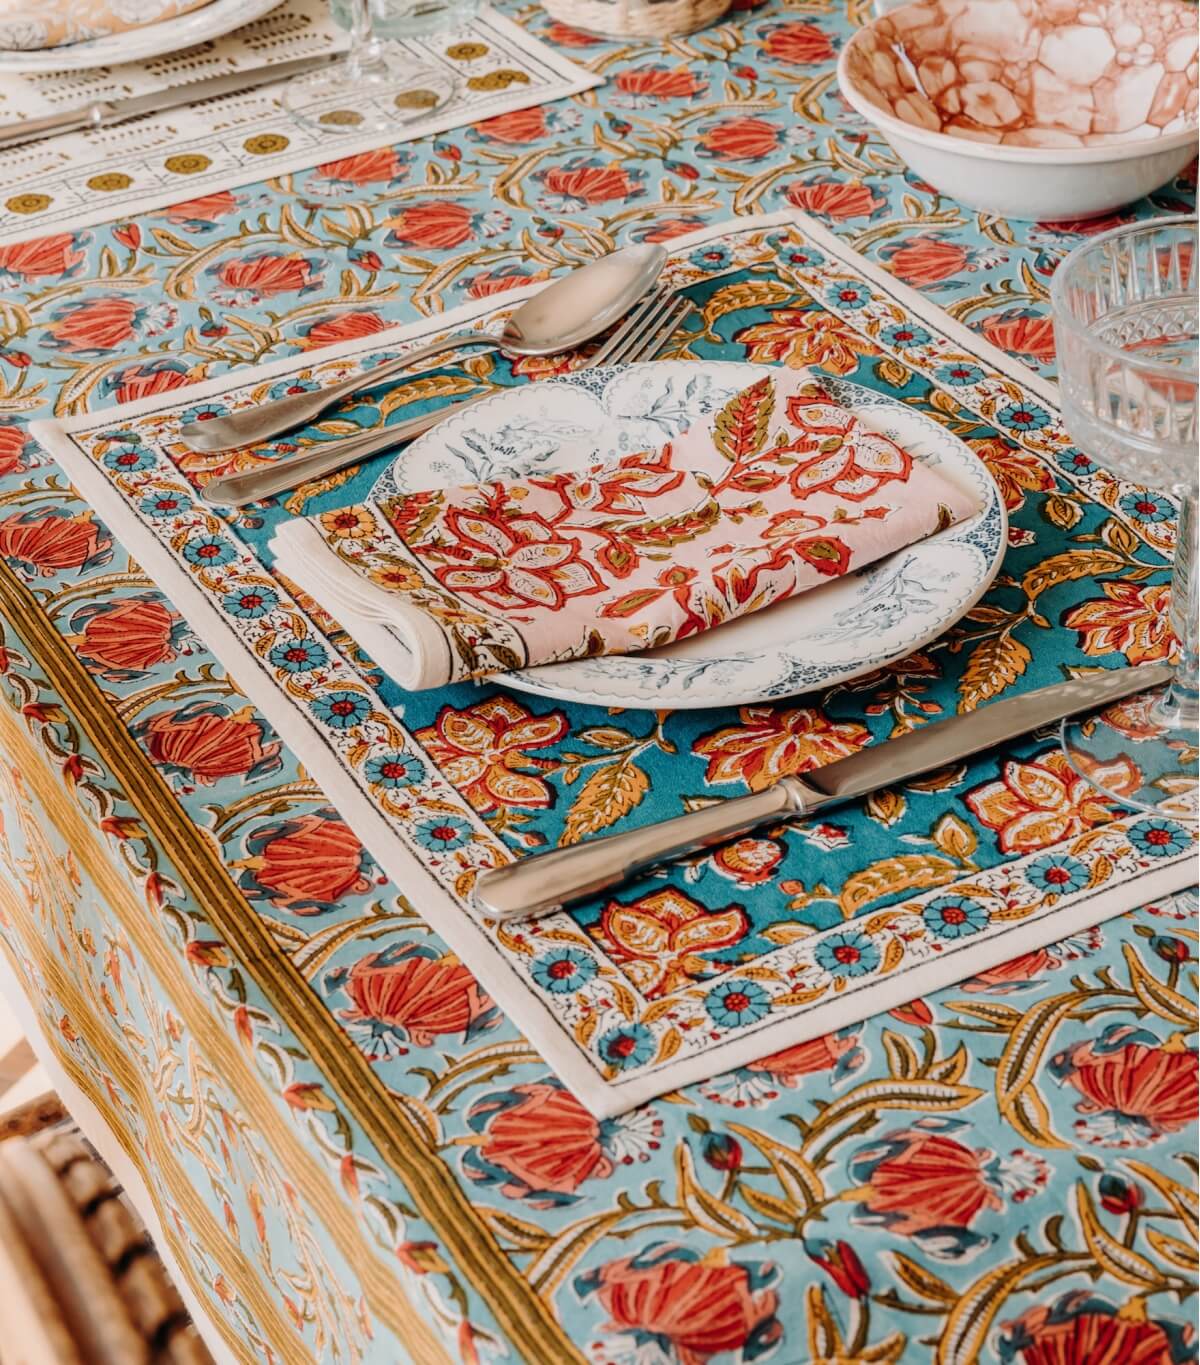 Set de table fleuri 35x45 cm Rang bleu